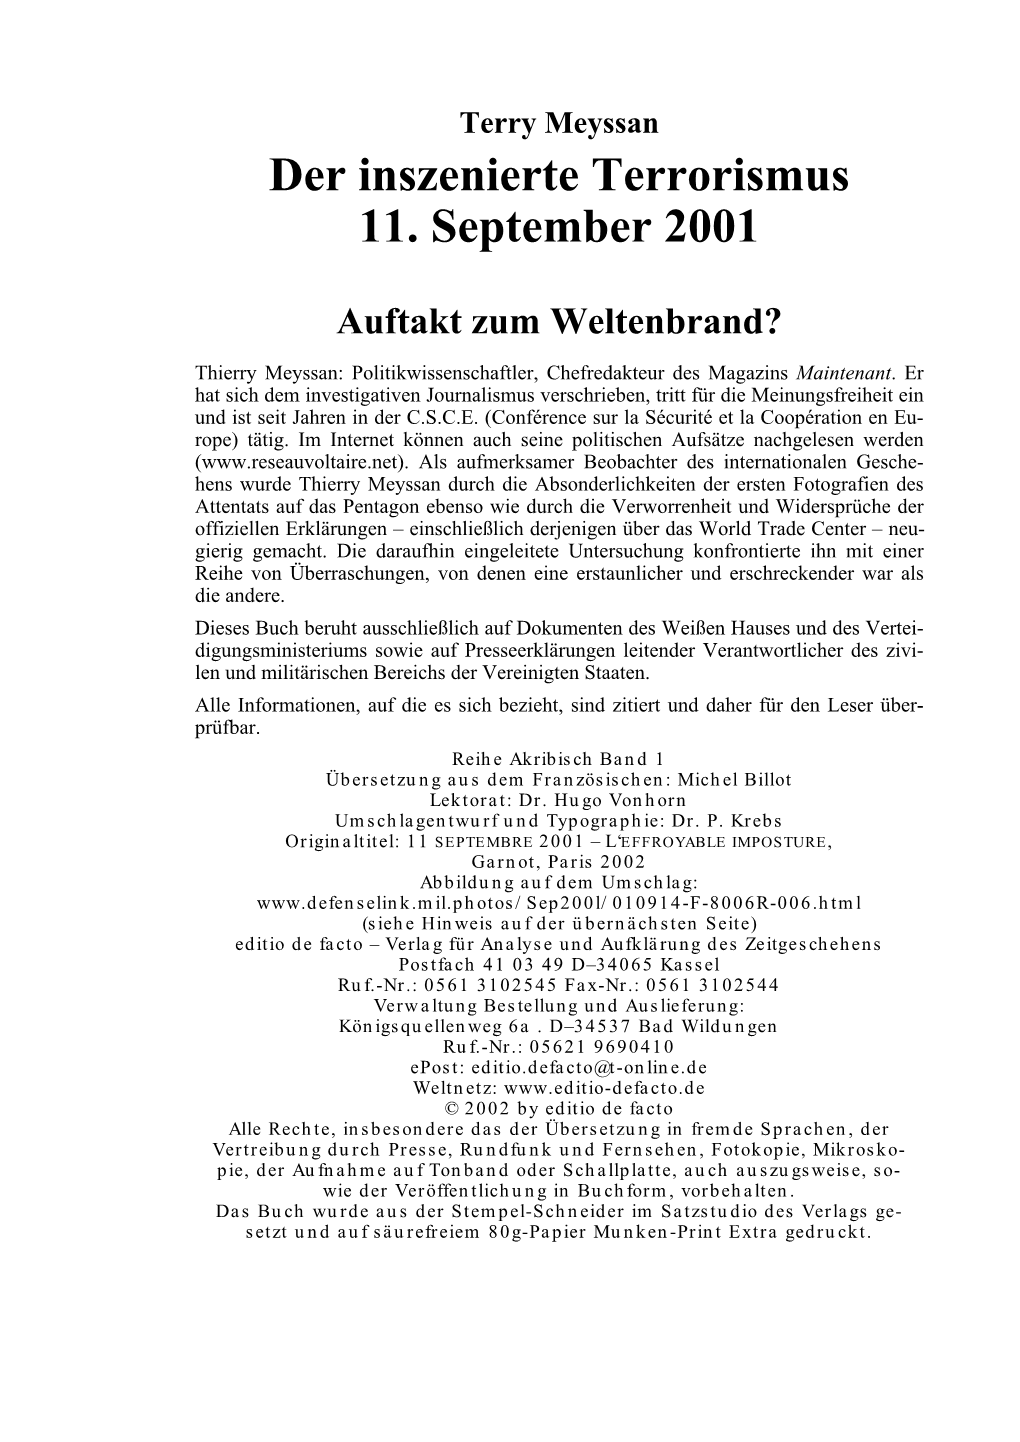 Der Inszenierte Terrorismus 11. September 2001